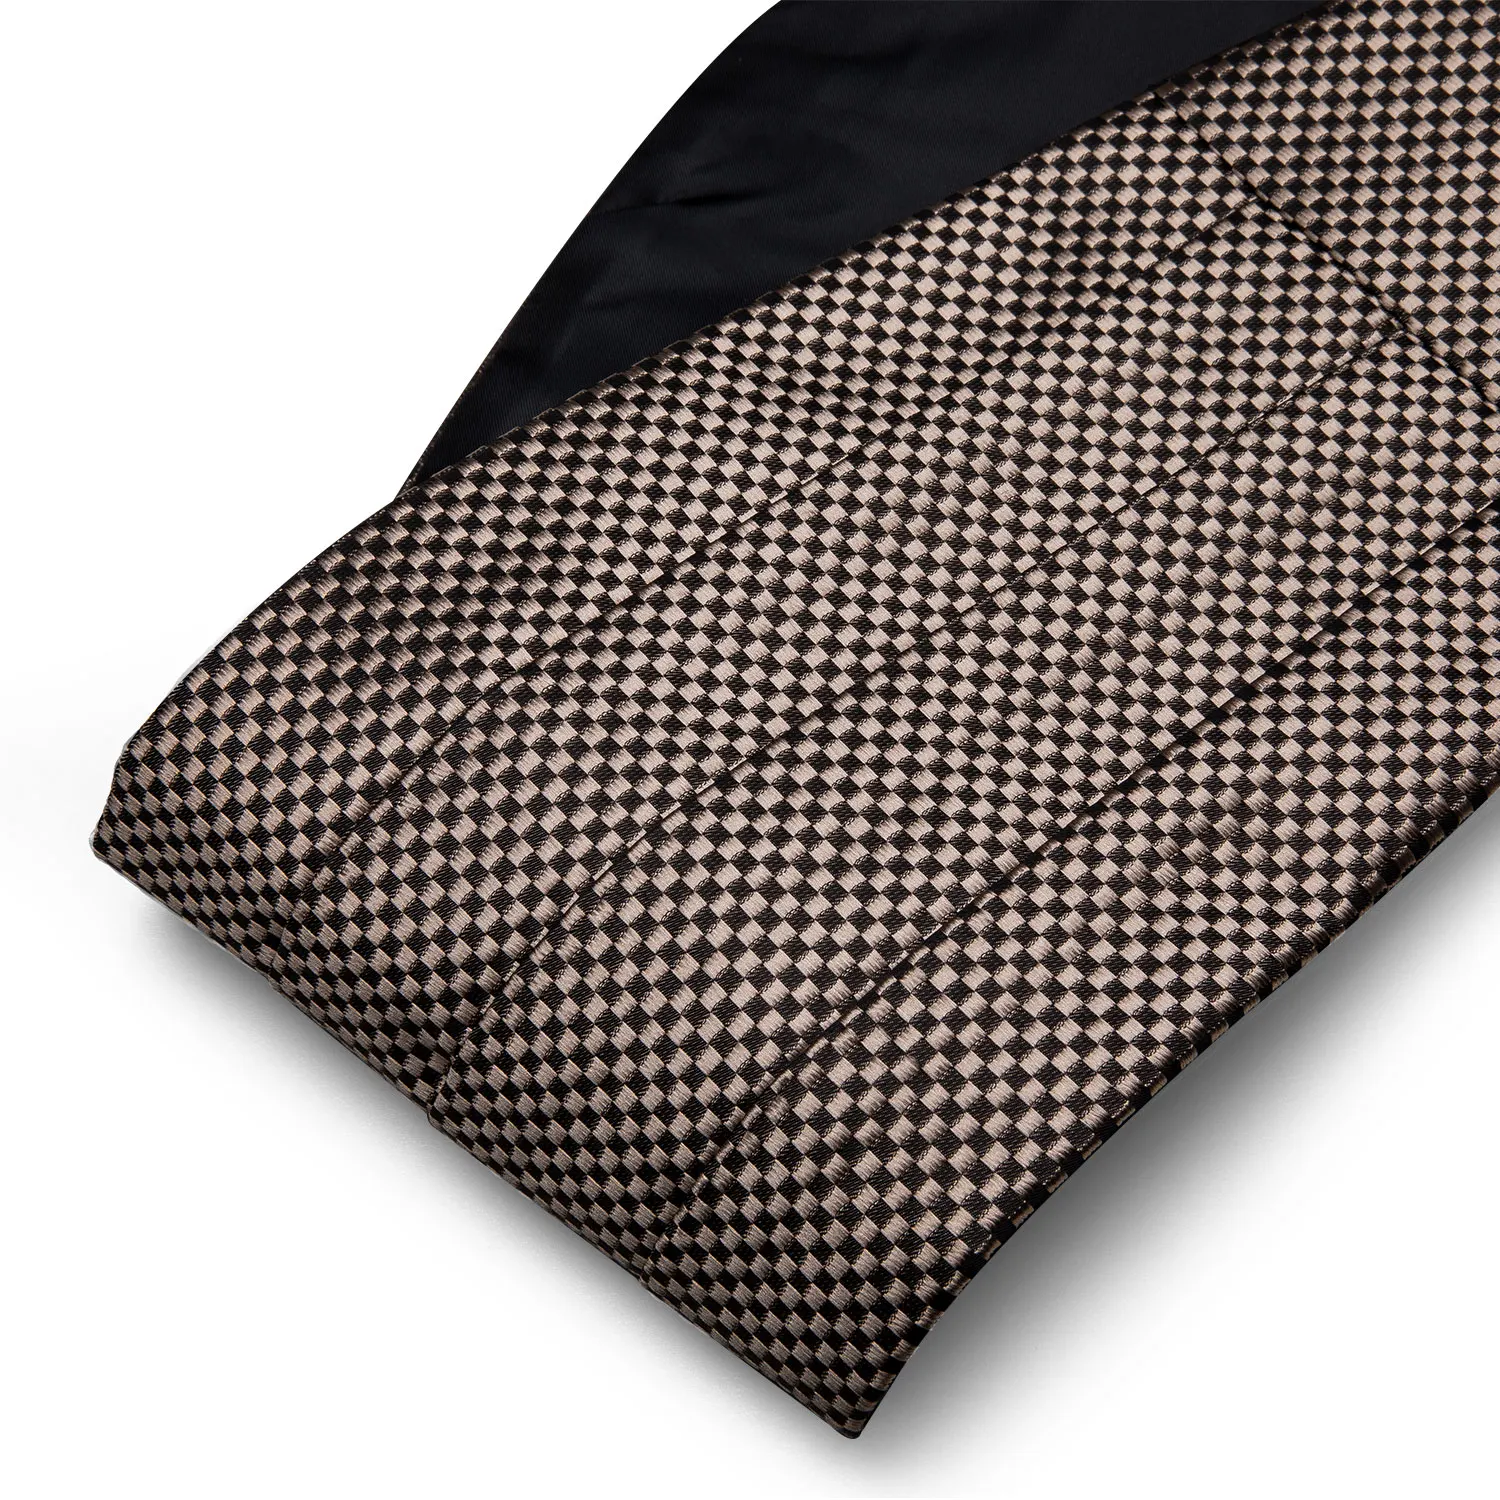 Barry. Wang мужские коричневые бант поясом белый лук галстук, шейный платок и запонки пояс для свадьбы YF-1024